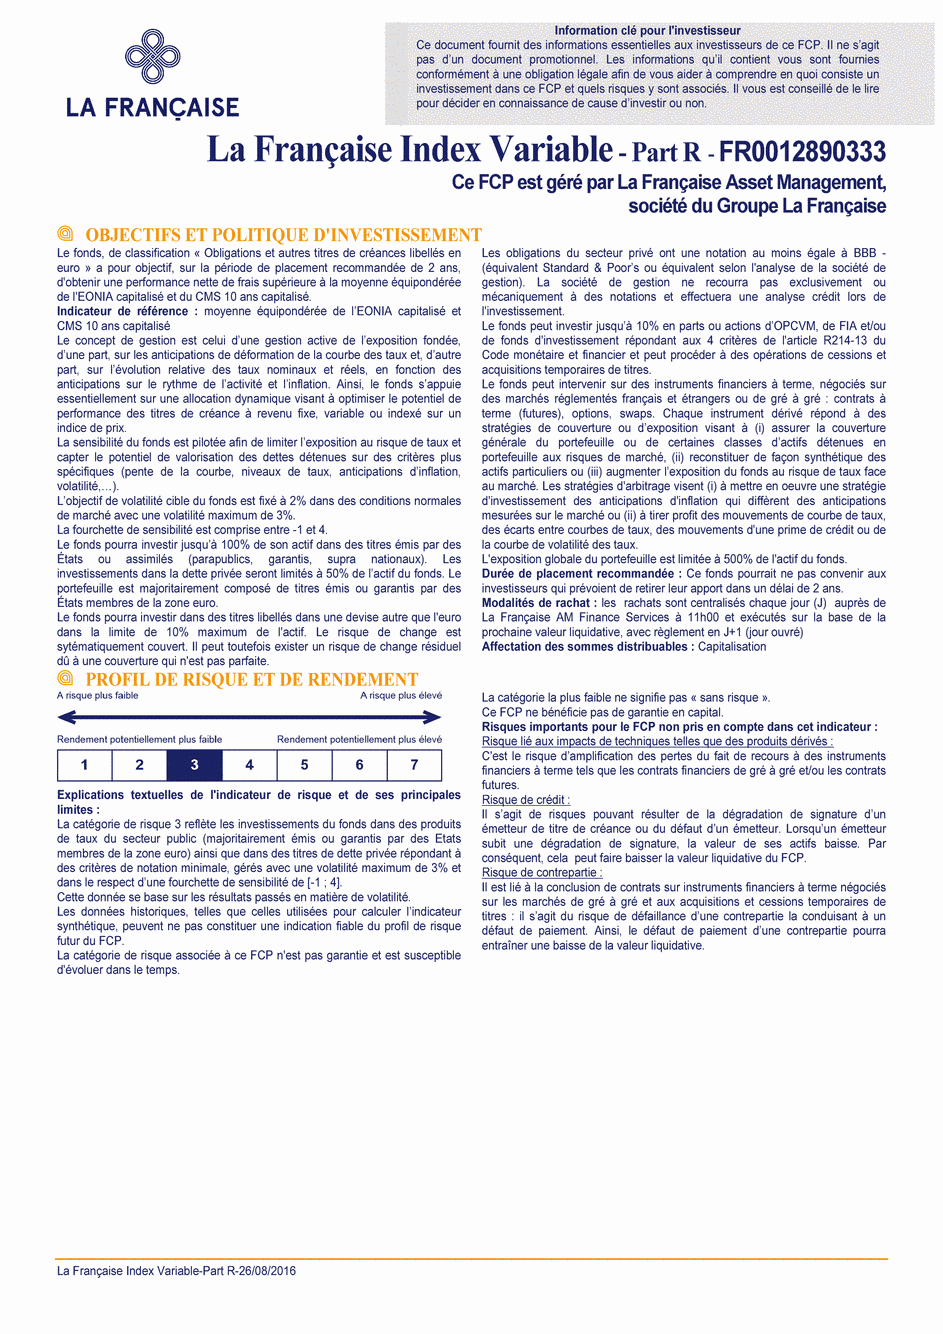 DICI La Française Moderate Multibonds - Part R - 26/08/2016 - Français